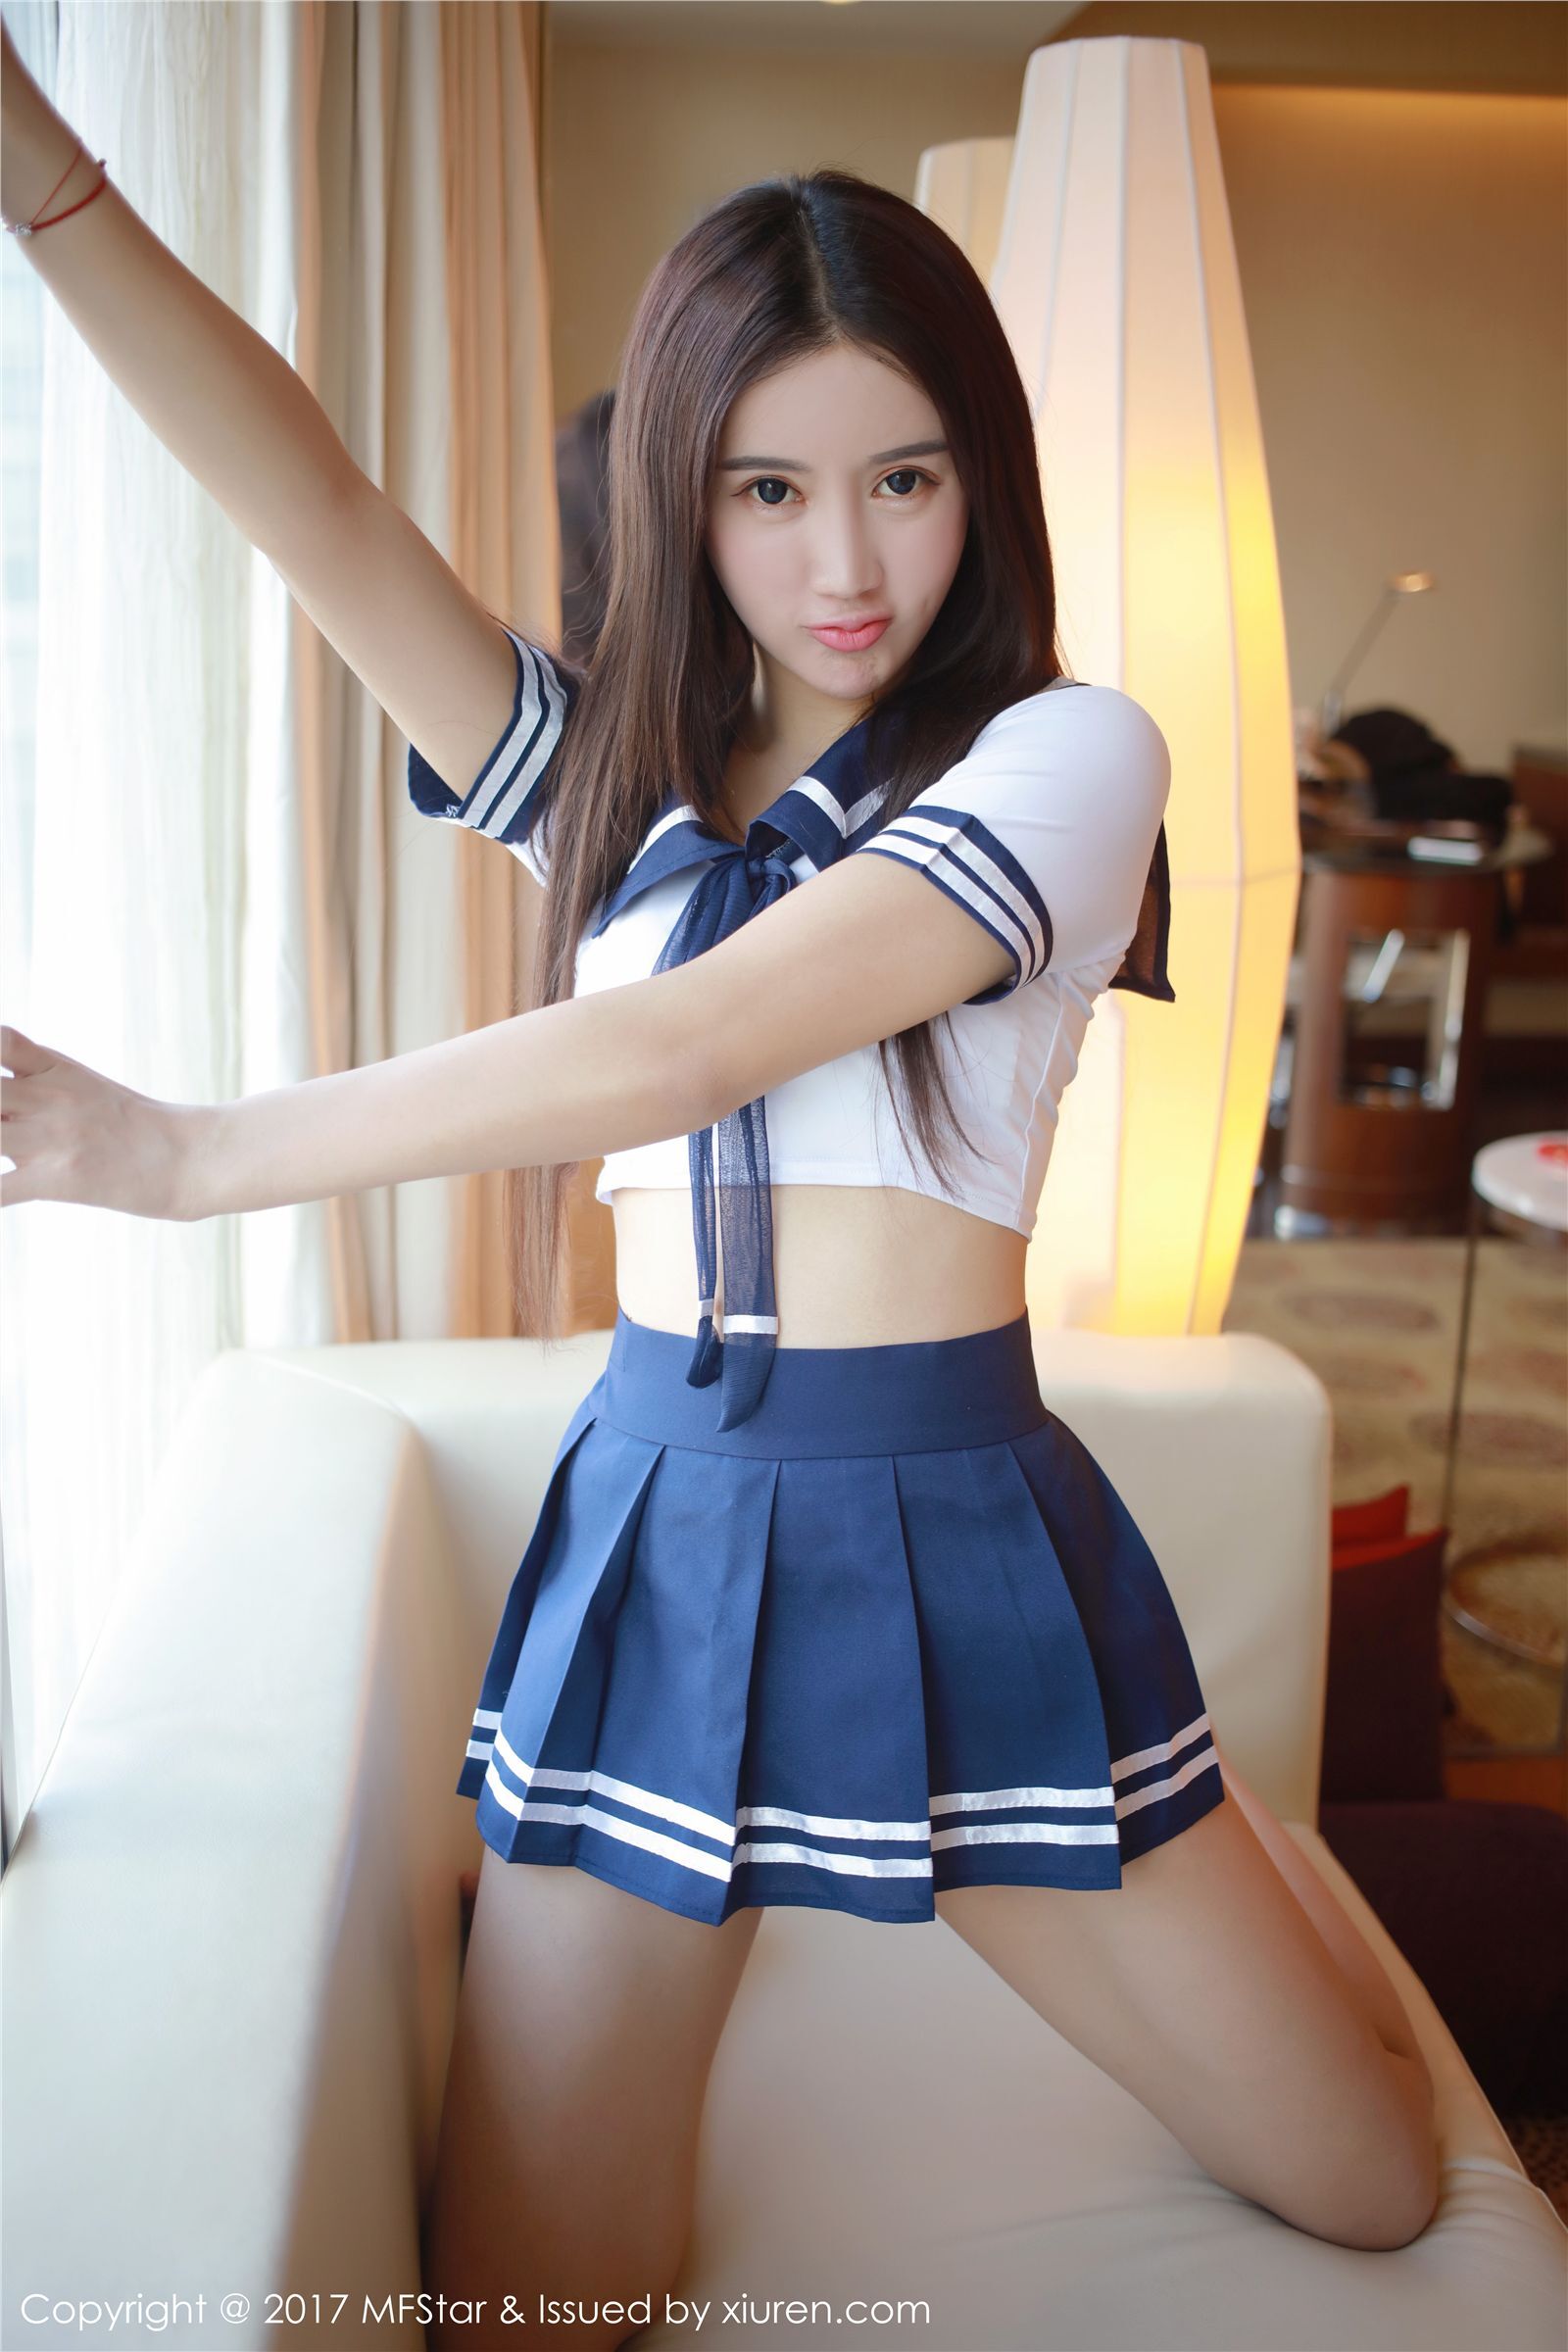 [ligui cabinet] March 5, 2017 online beauty model Wenxin